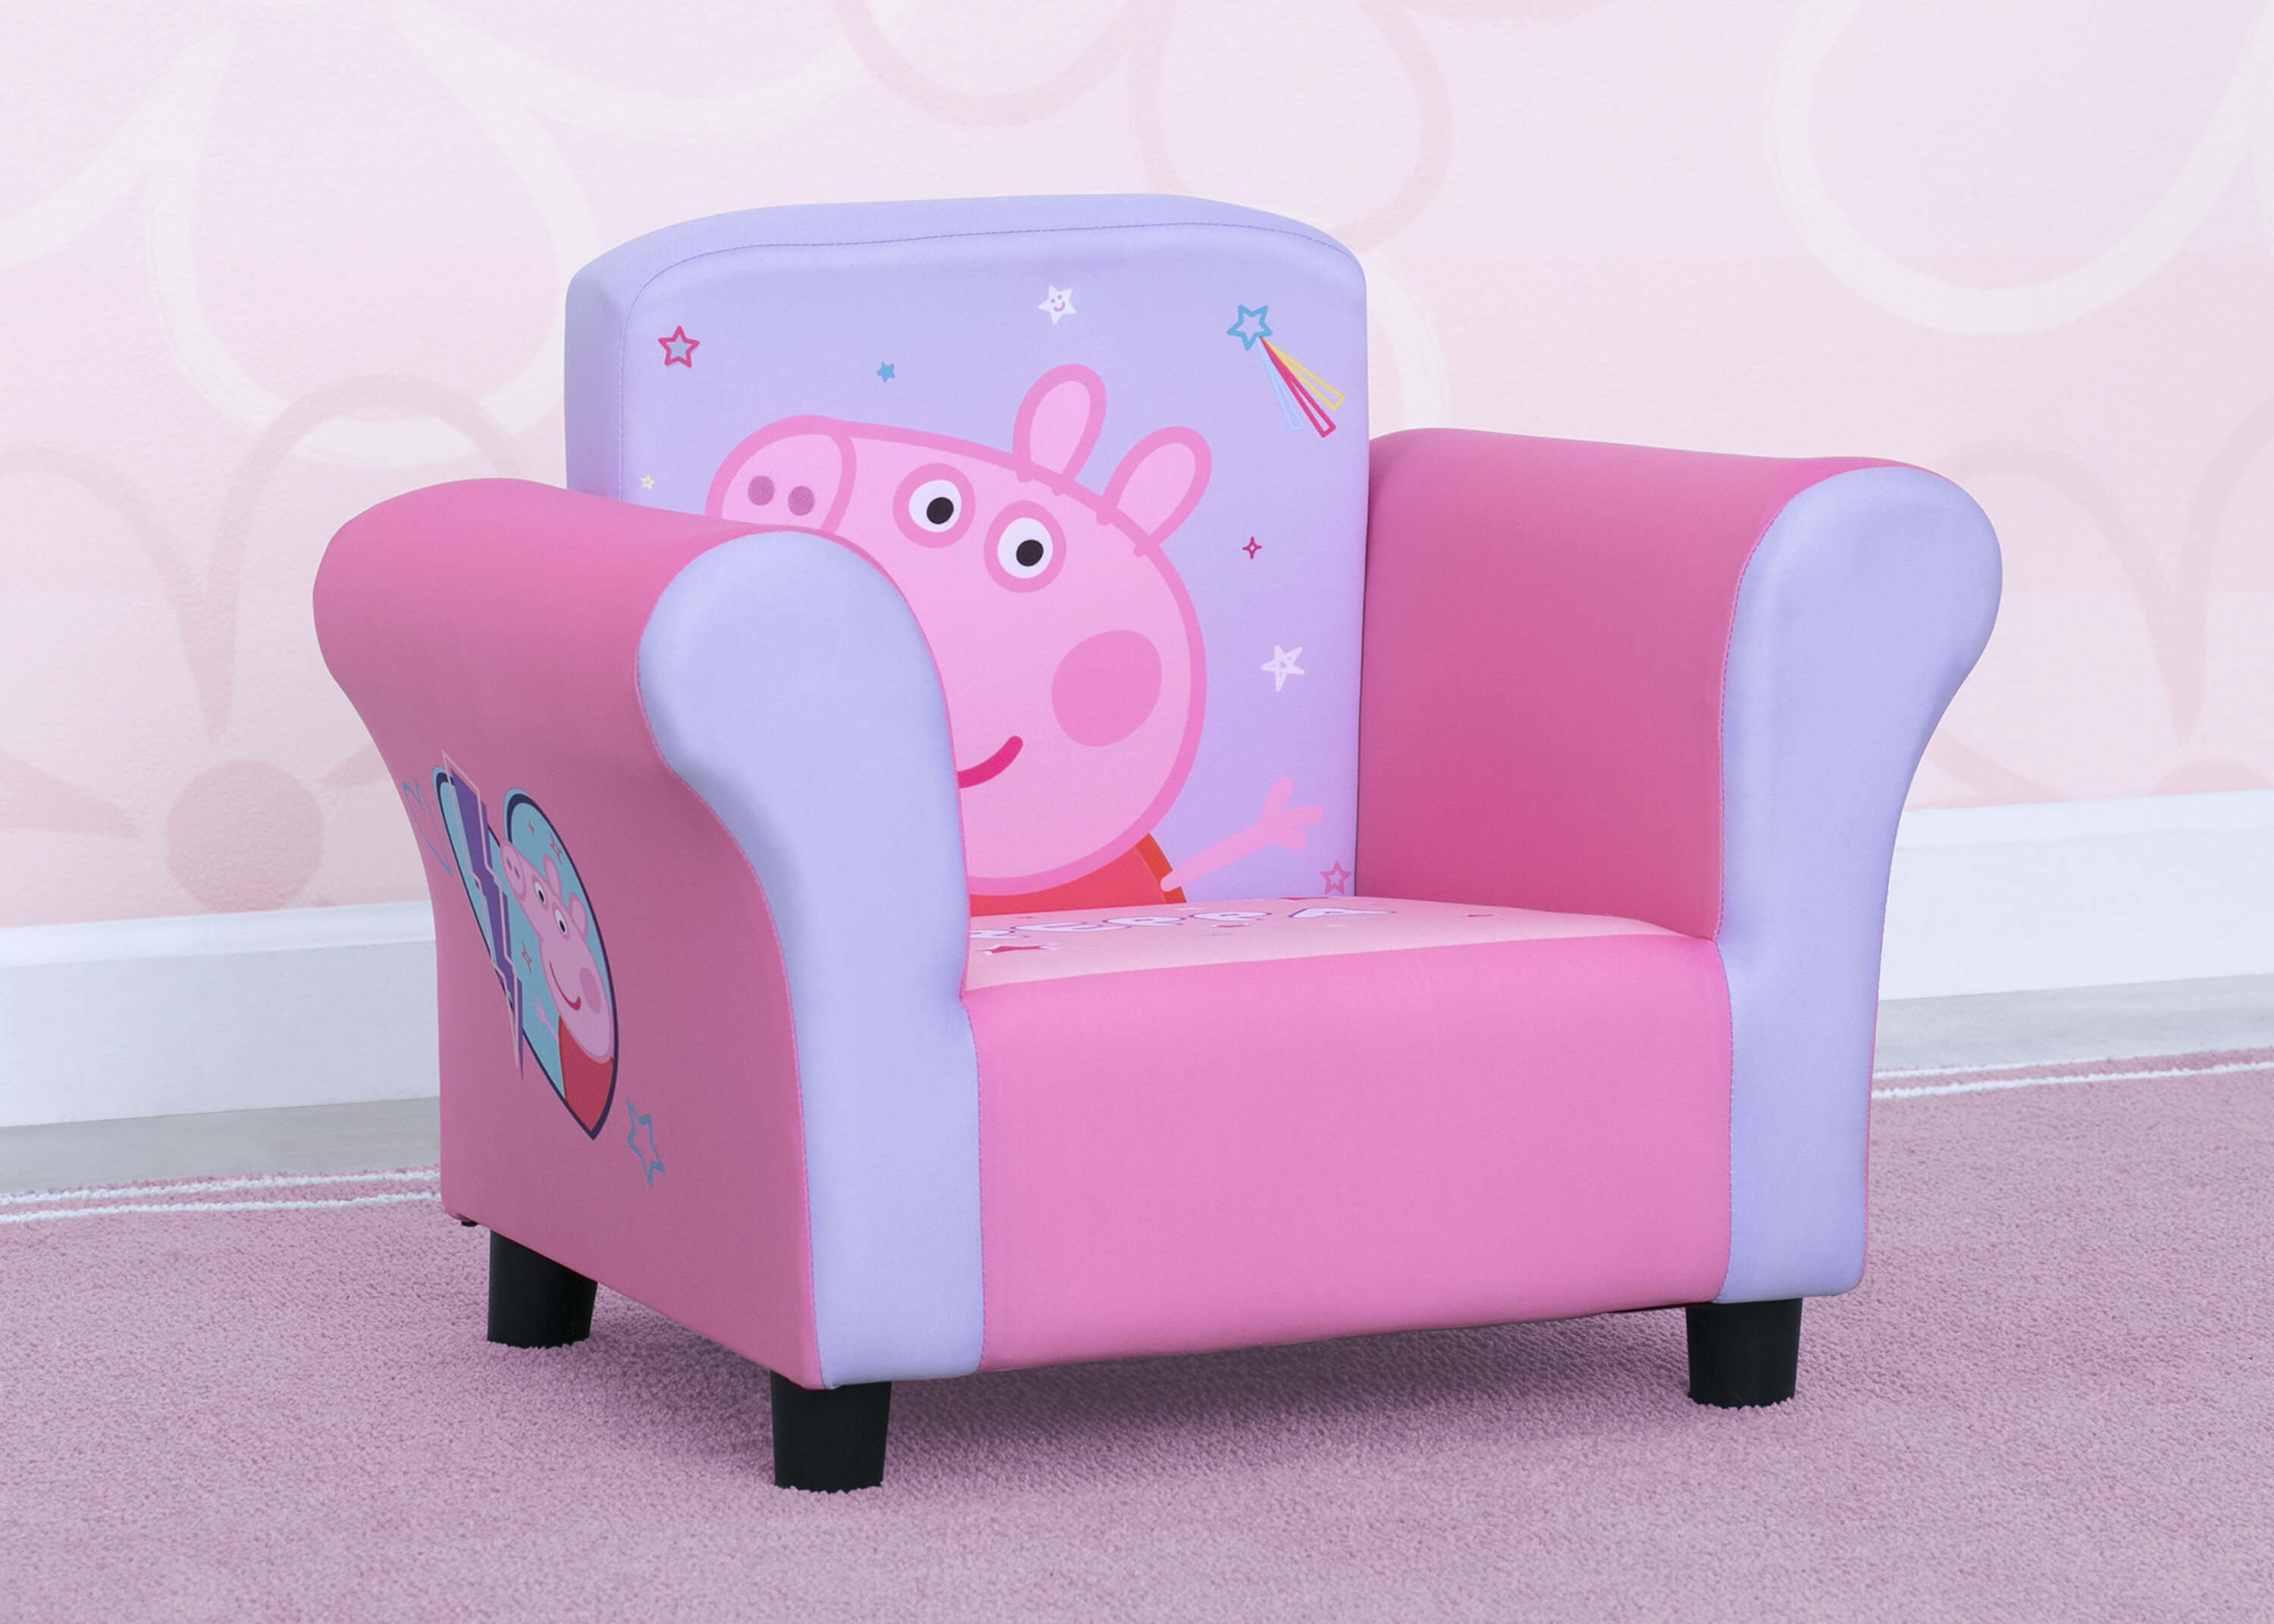 peppa pig lounge chair